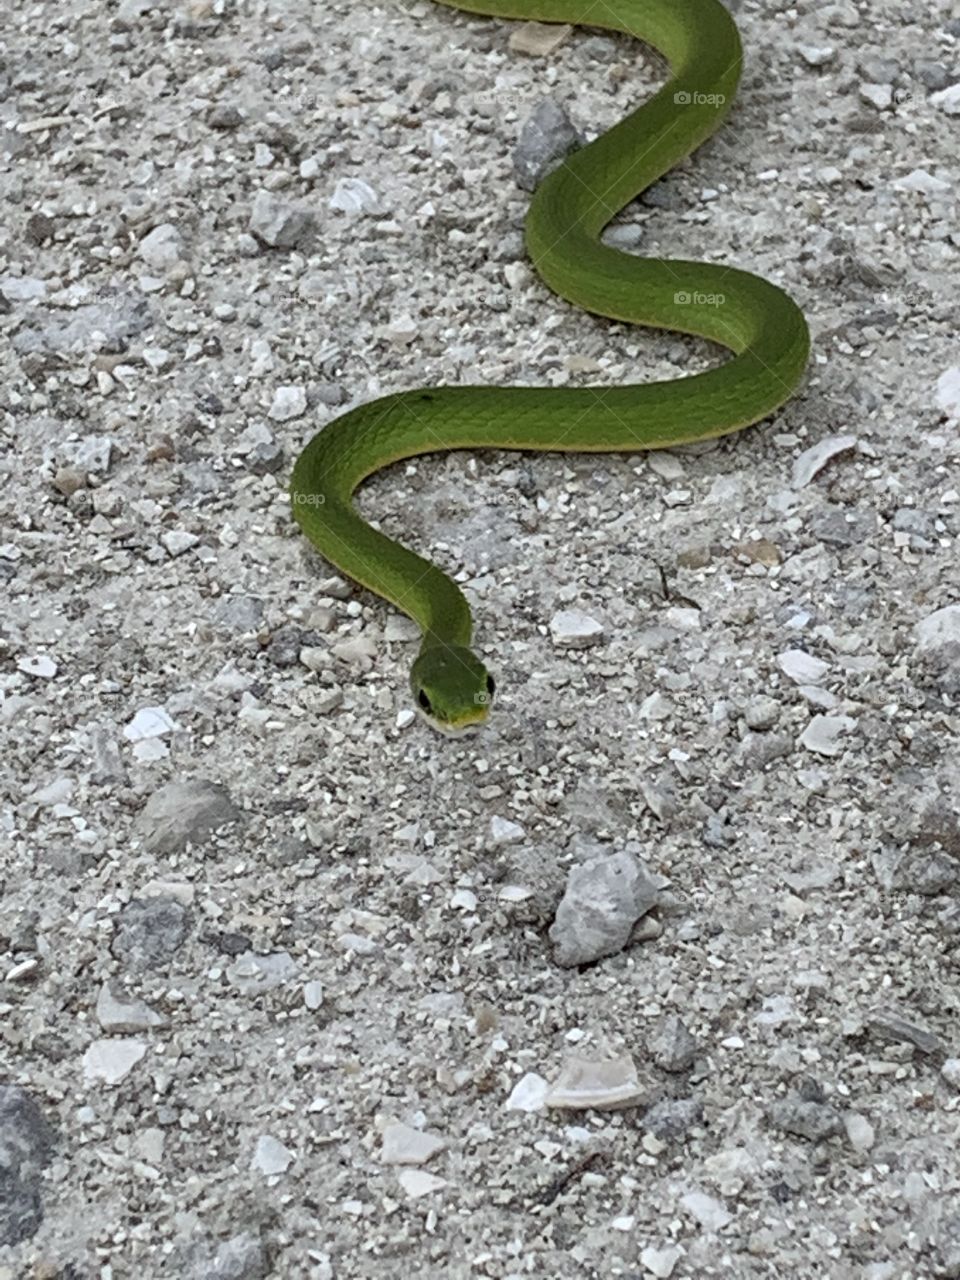 Friendly snake